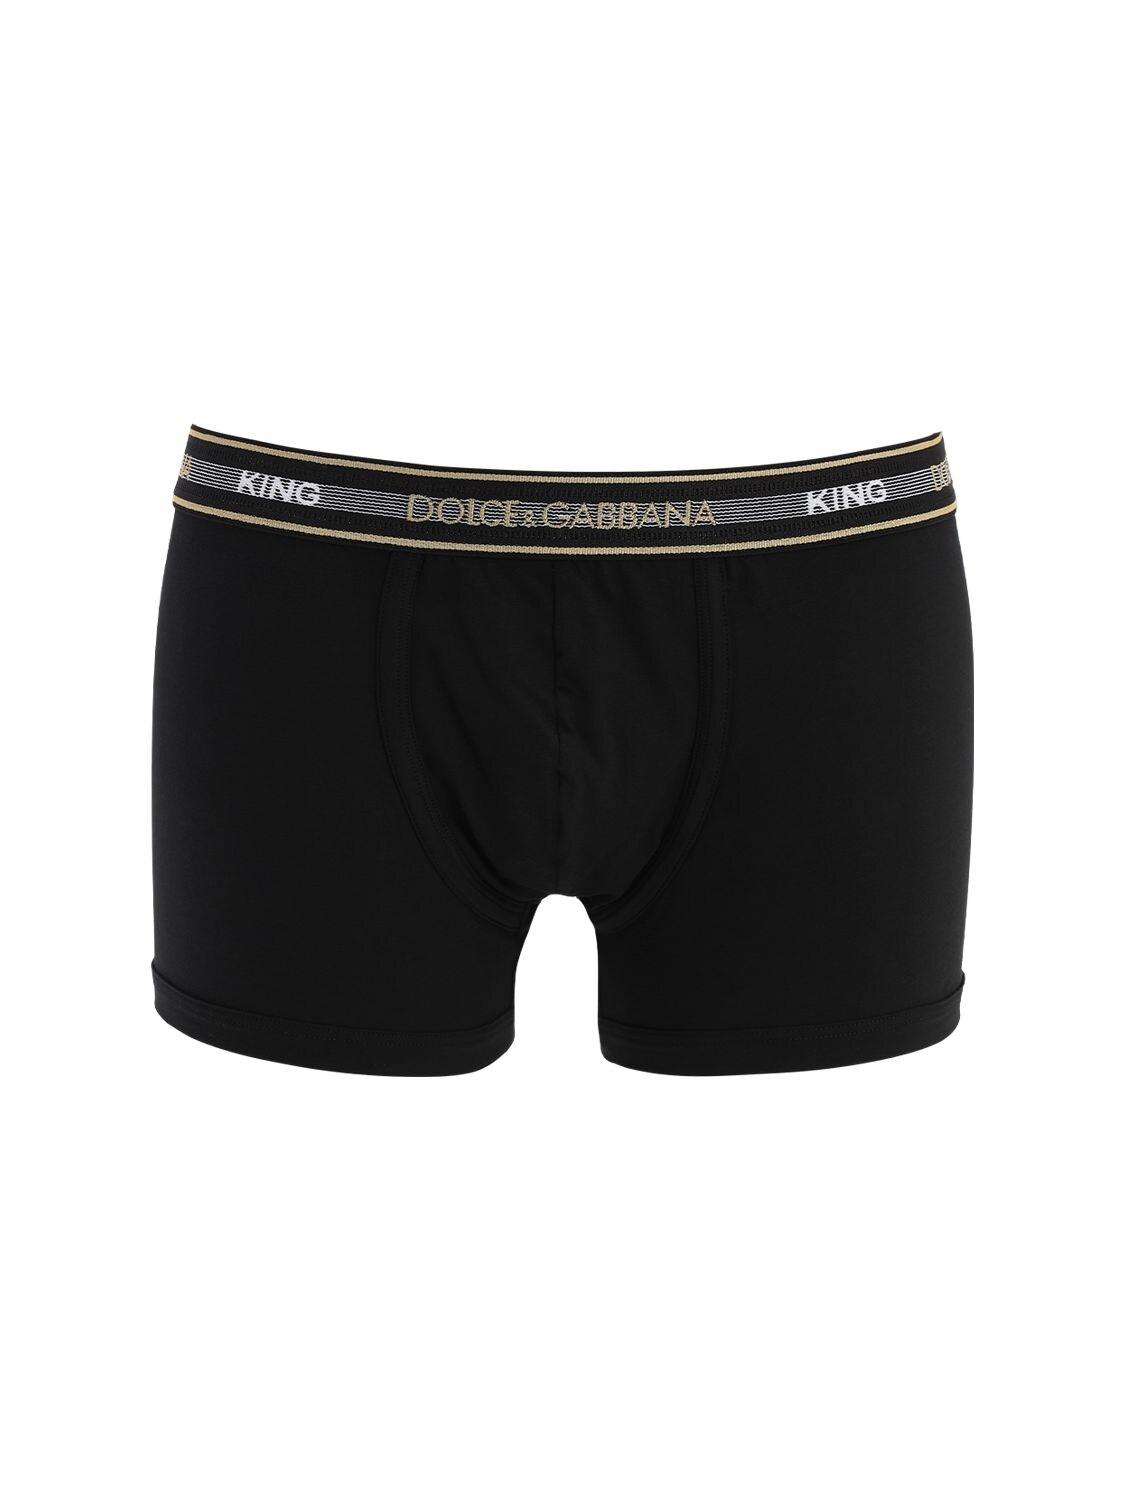 Dolce & Gabbana Dg King Cotton Stretch Boxer Briefs In Black,gold